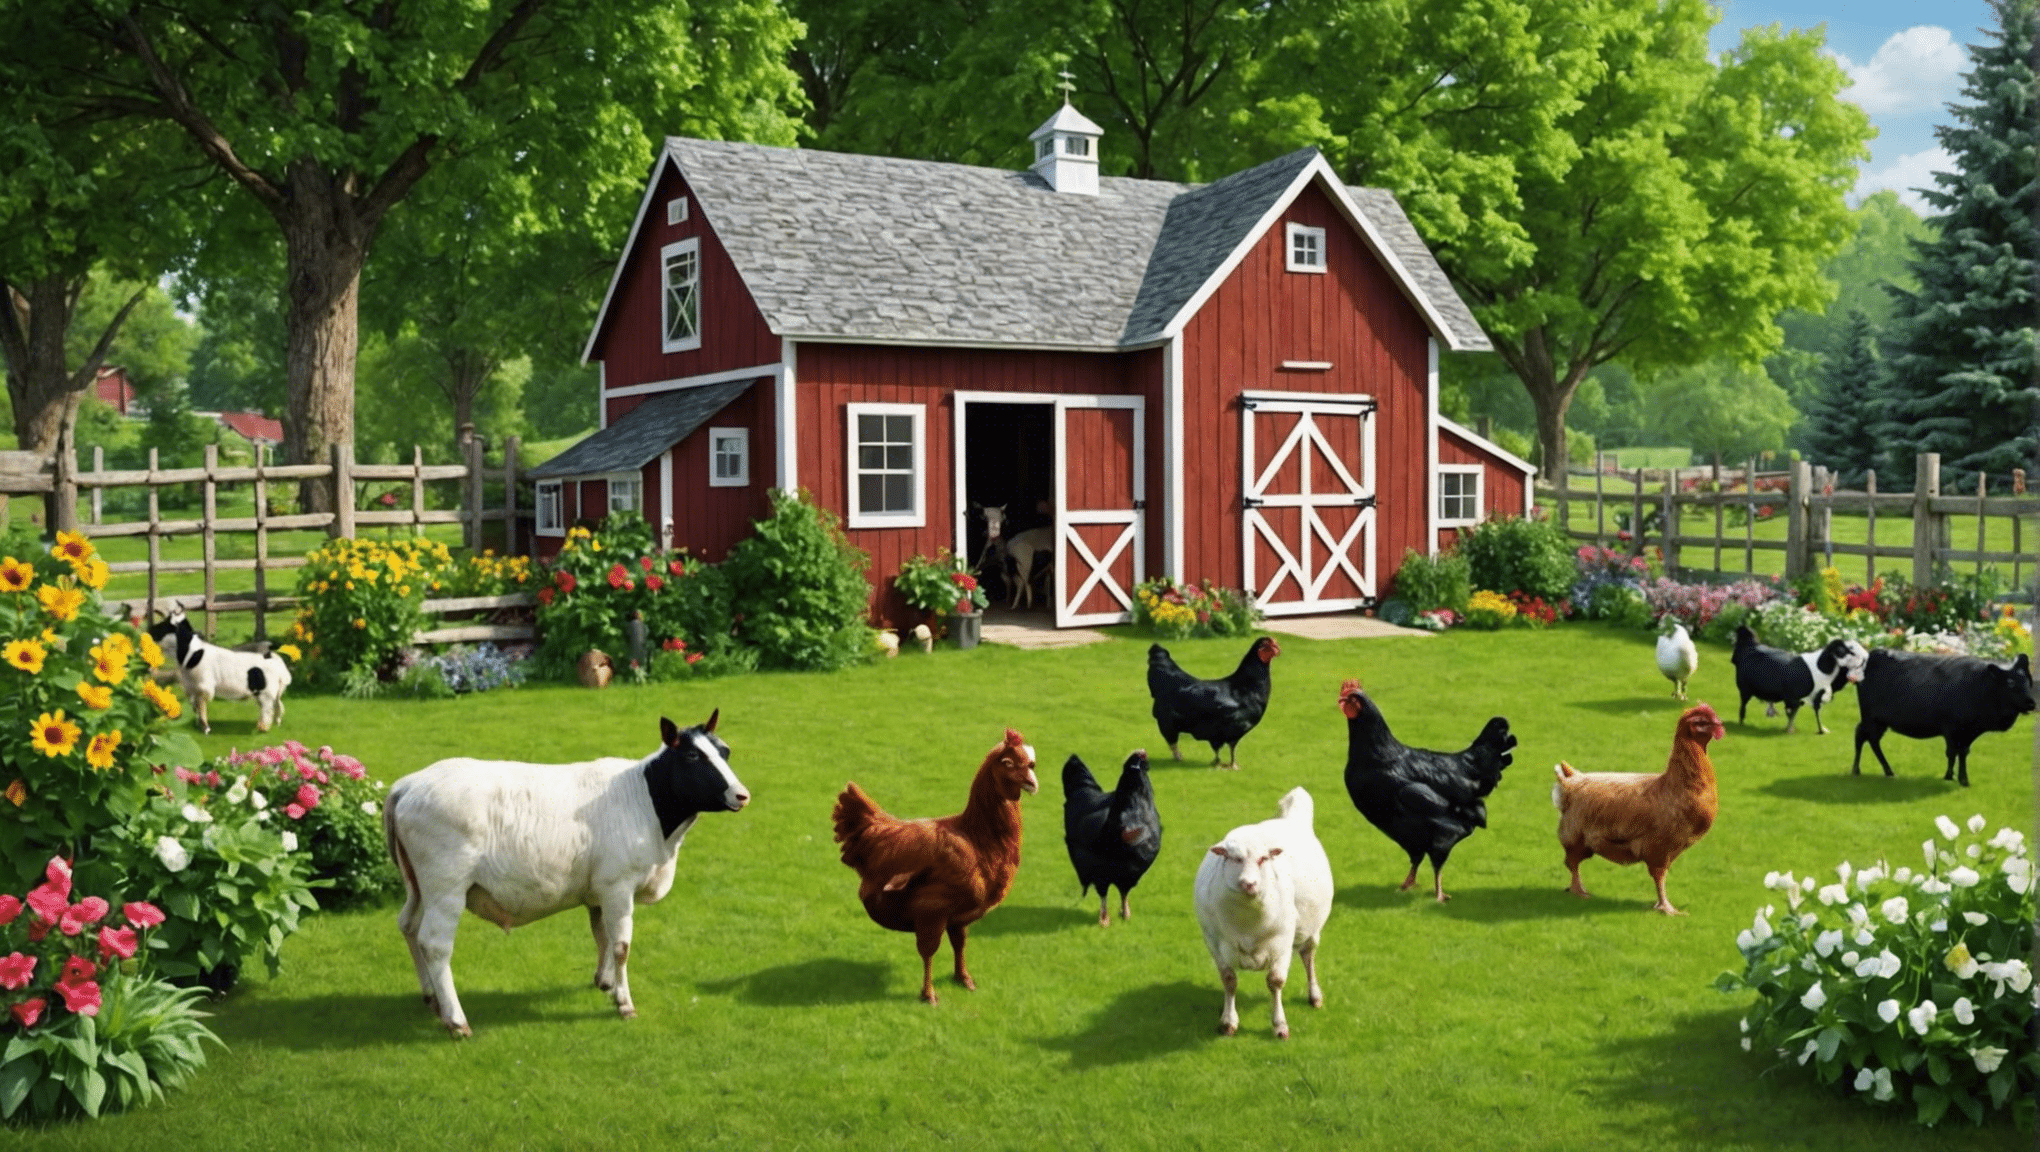 גלה את היתרונות של בעלי חיות משק בחצר האחורית עבור הבית והמשפחה שלך. למד על גידול, טיפול והנאה מחיות משק בחצר האחורית שלך.